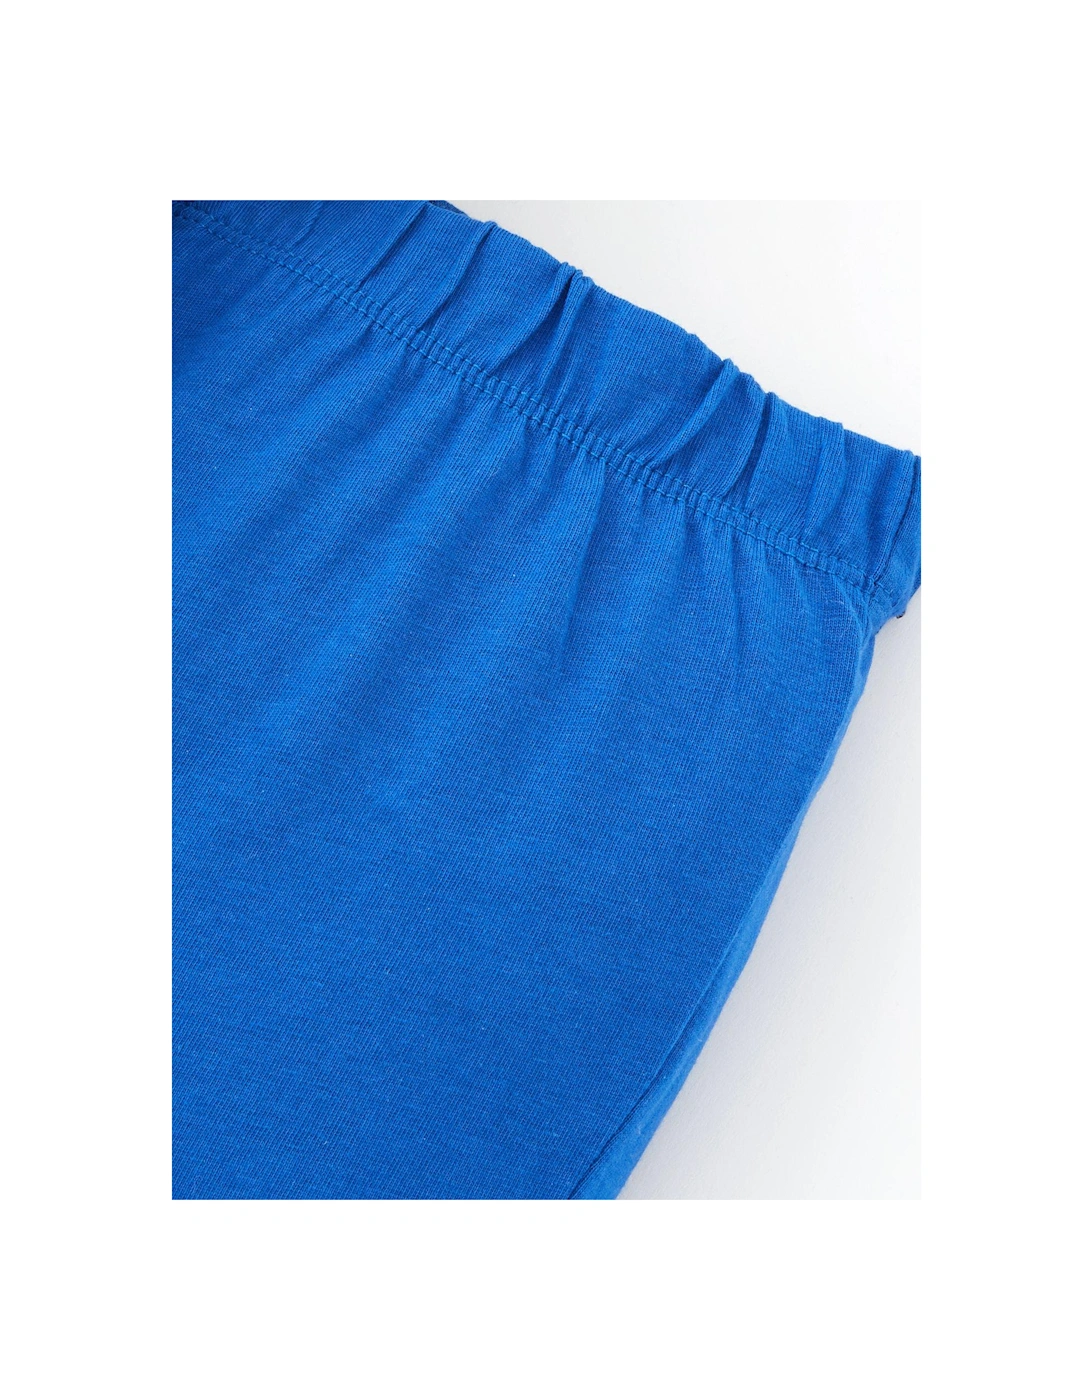 Boys Dinosaur Short Sleeve T-shirt and Short Set - Blue